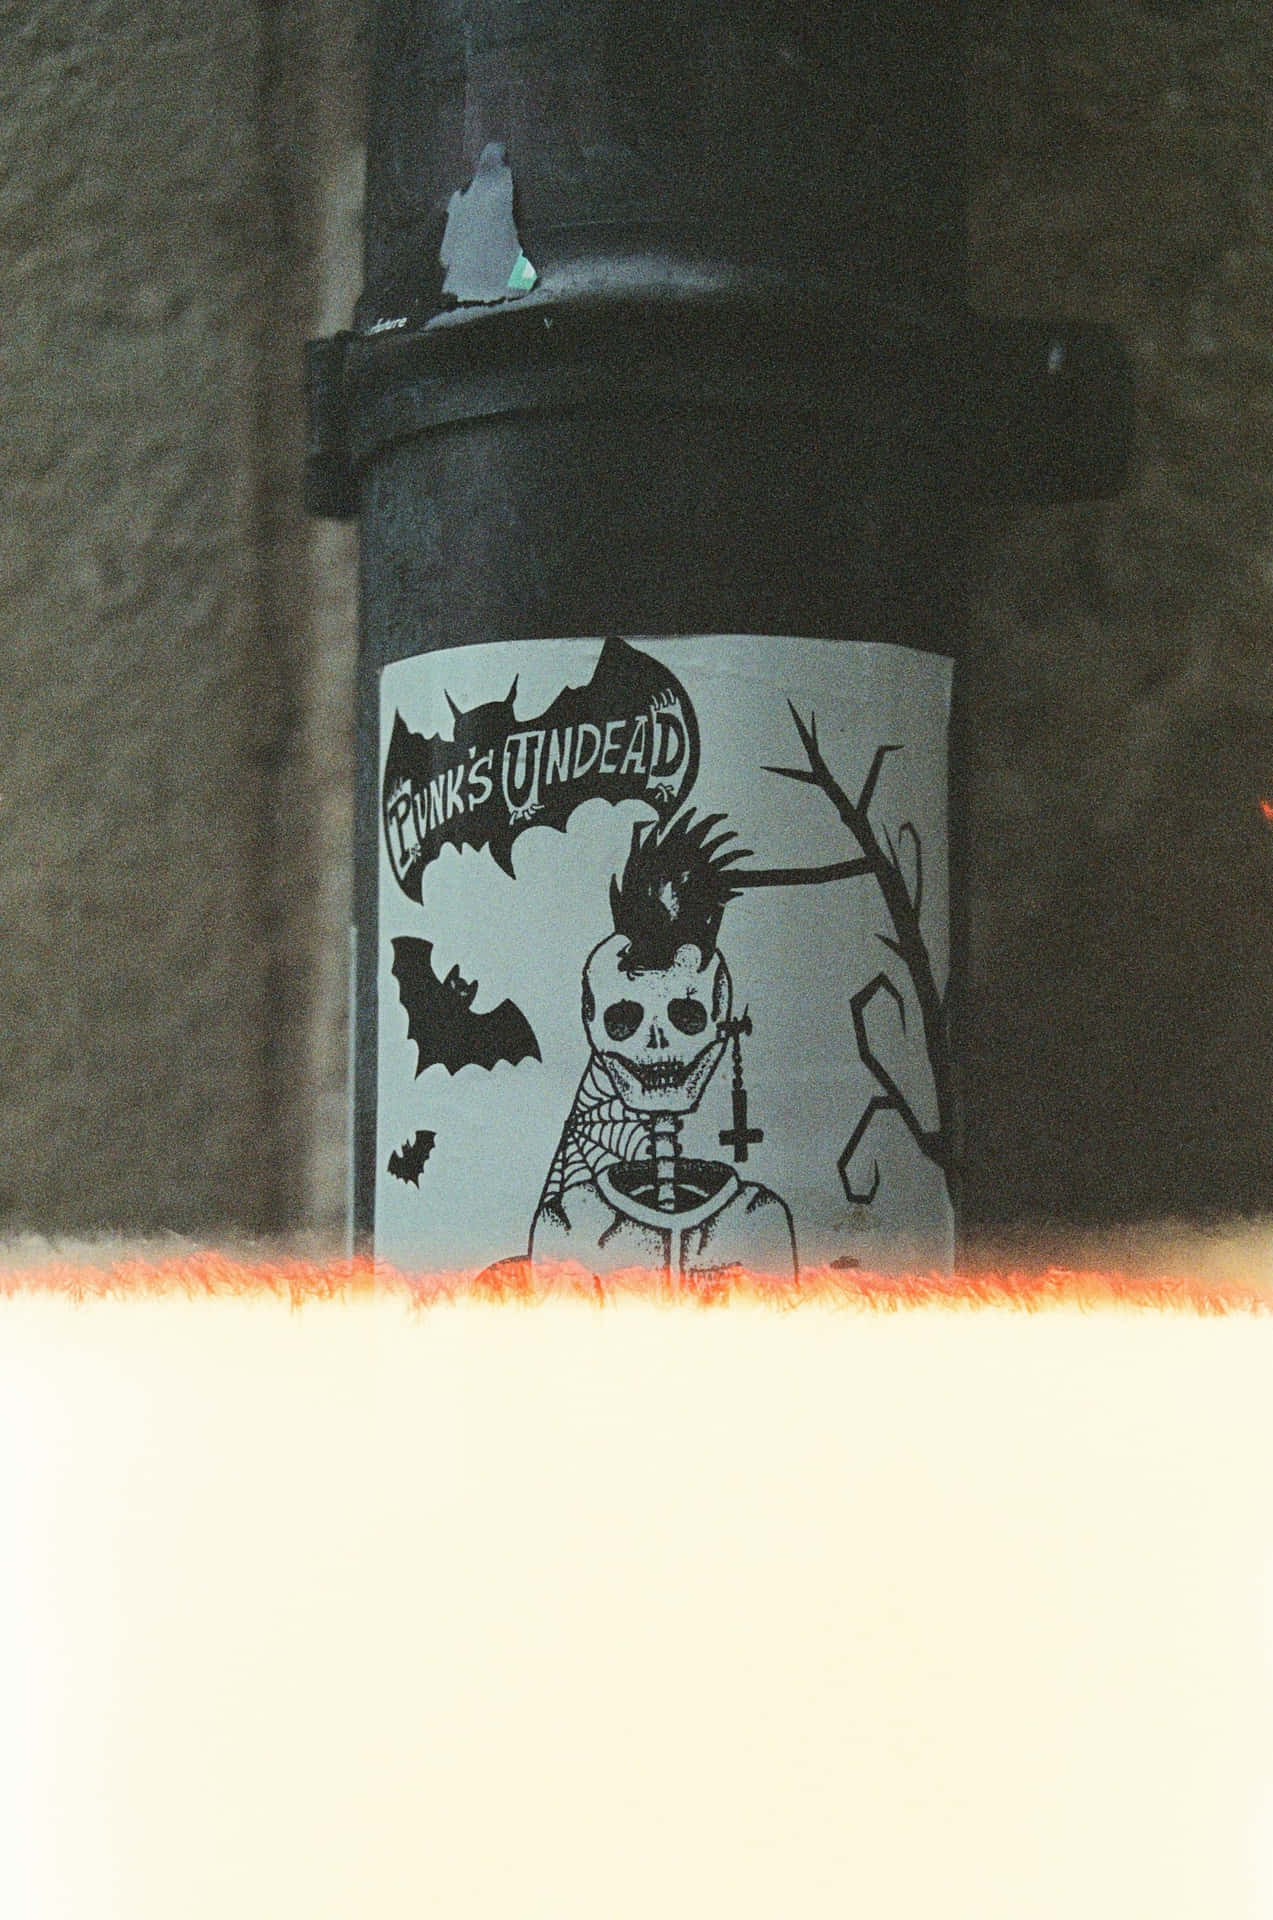 Punk Undead Sticker On Pipe.jpg Wallpaper